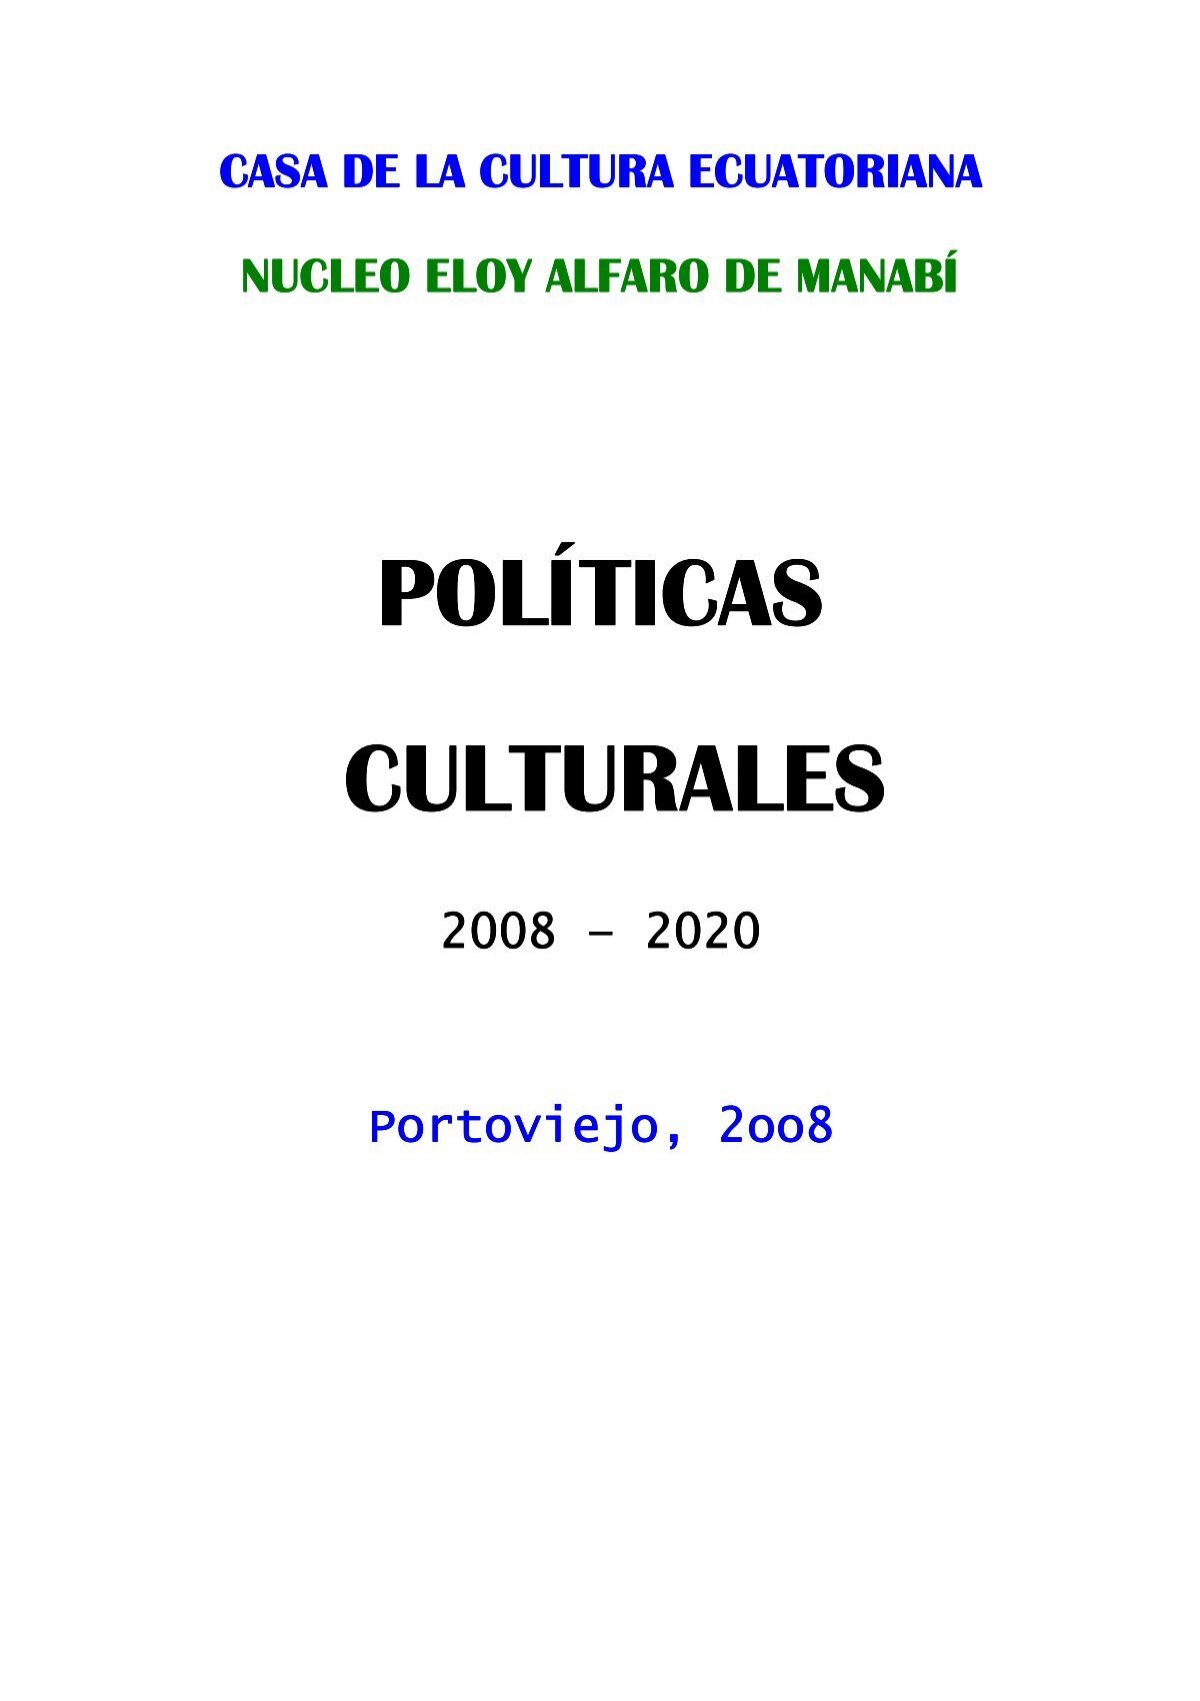 Politicas Culturales Dr Dumar Iglesias Mata Casa De La